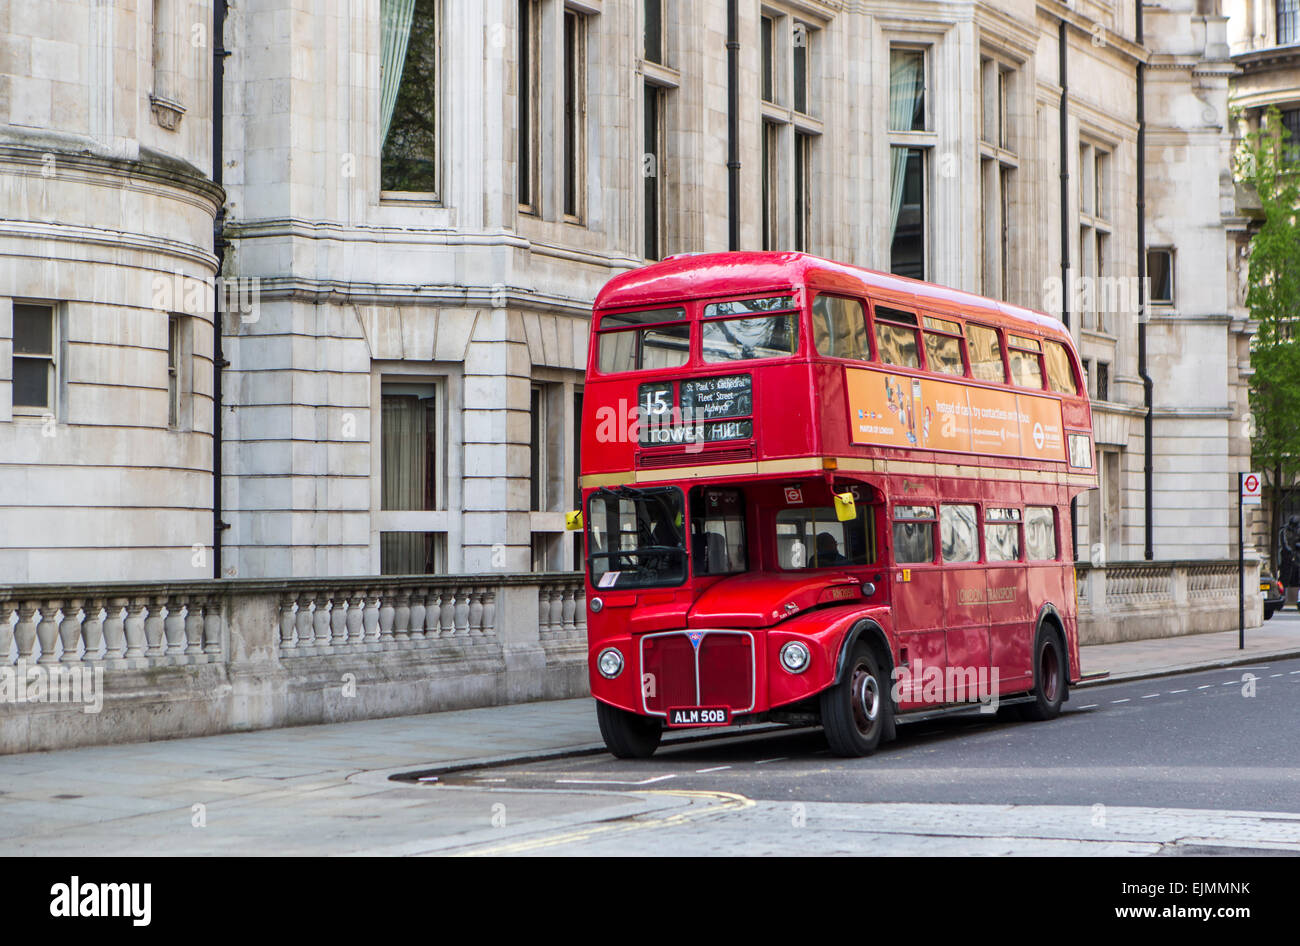 Banda stagnata Retrò Rosso DOUBLE decker London Bus Shabby Chic Vintage Bus modello di grandi dimensioni 